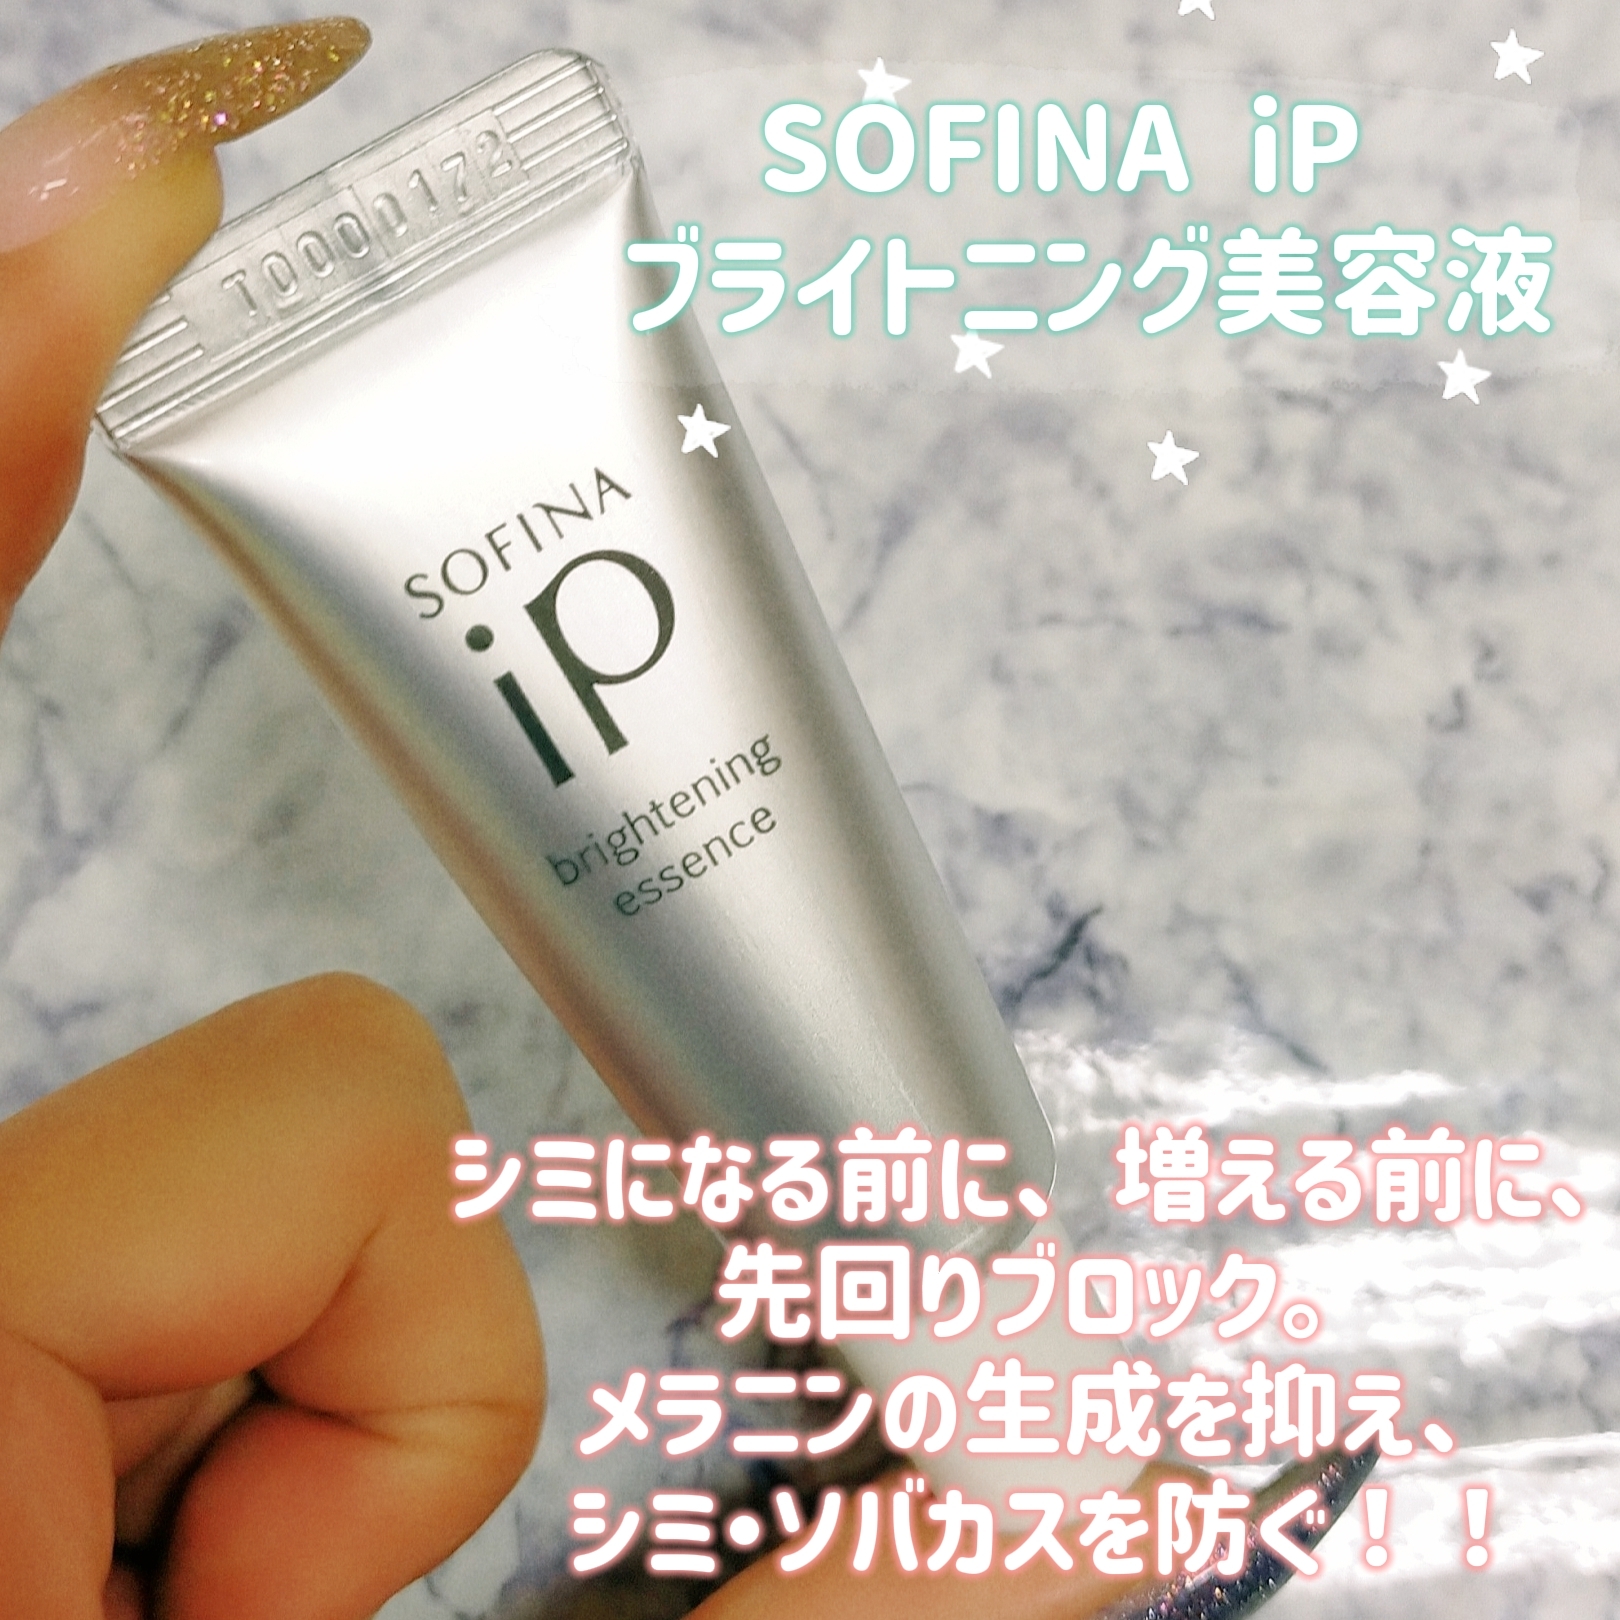 SOFINA iP(ソフィーナ アイピー) ブライトニング美容液の良い点・メリットに関するみこさんの口コミ画像1